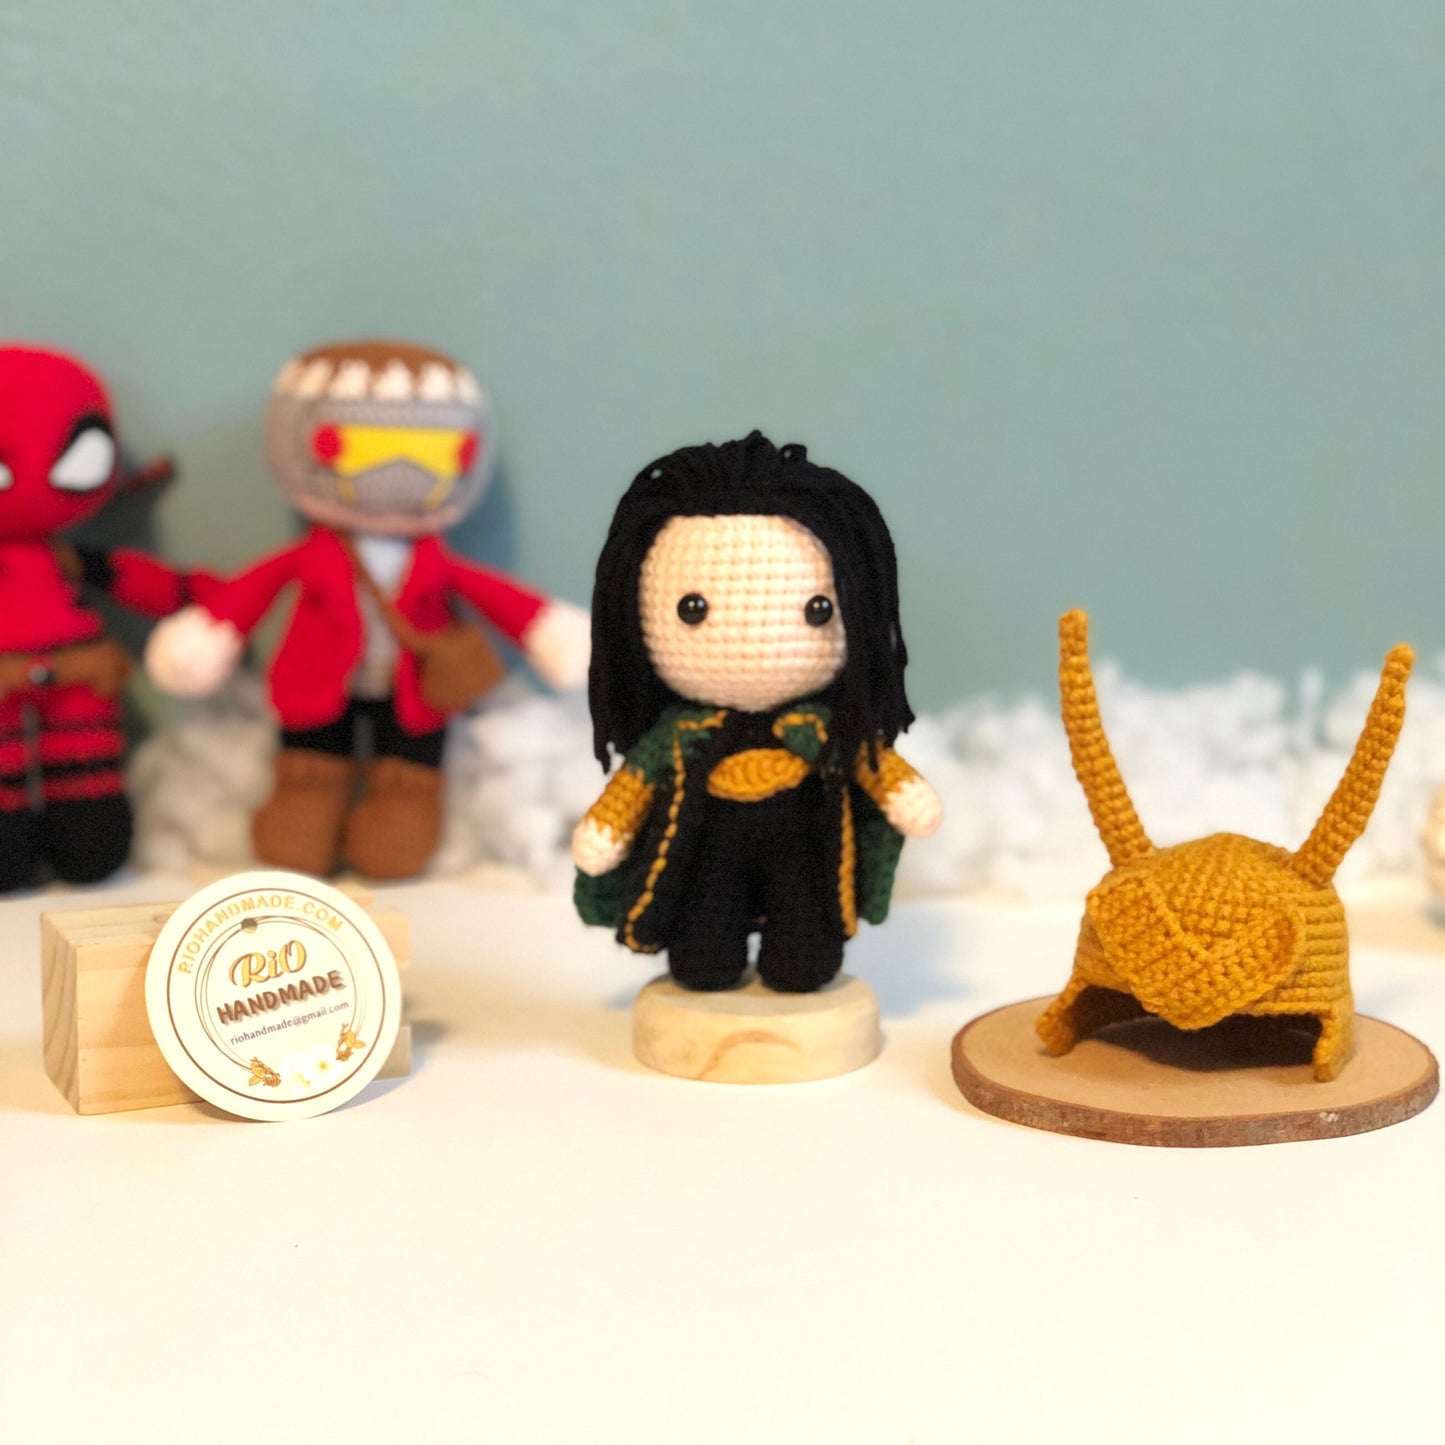 Handmade crocheted amigurumi Loki, inspired plush, gift, present